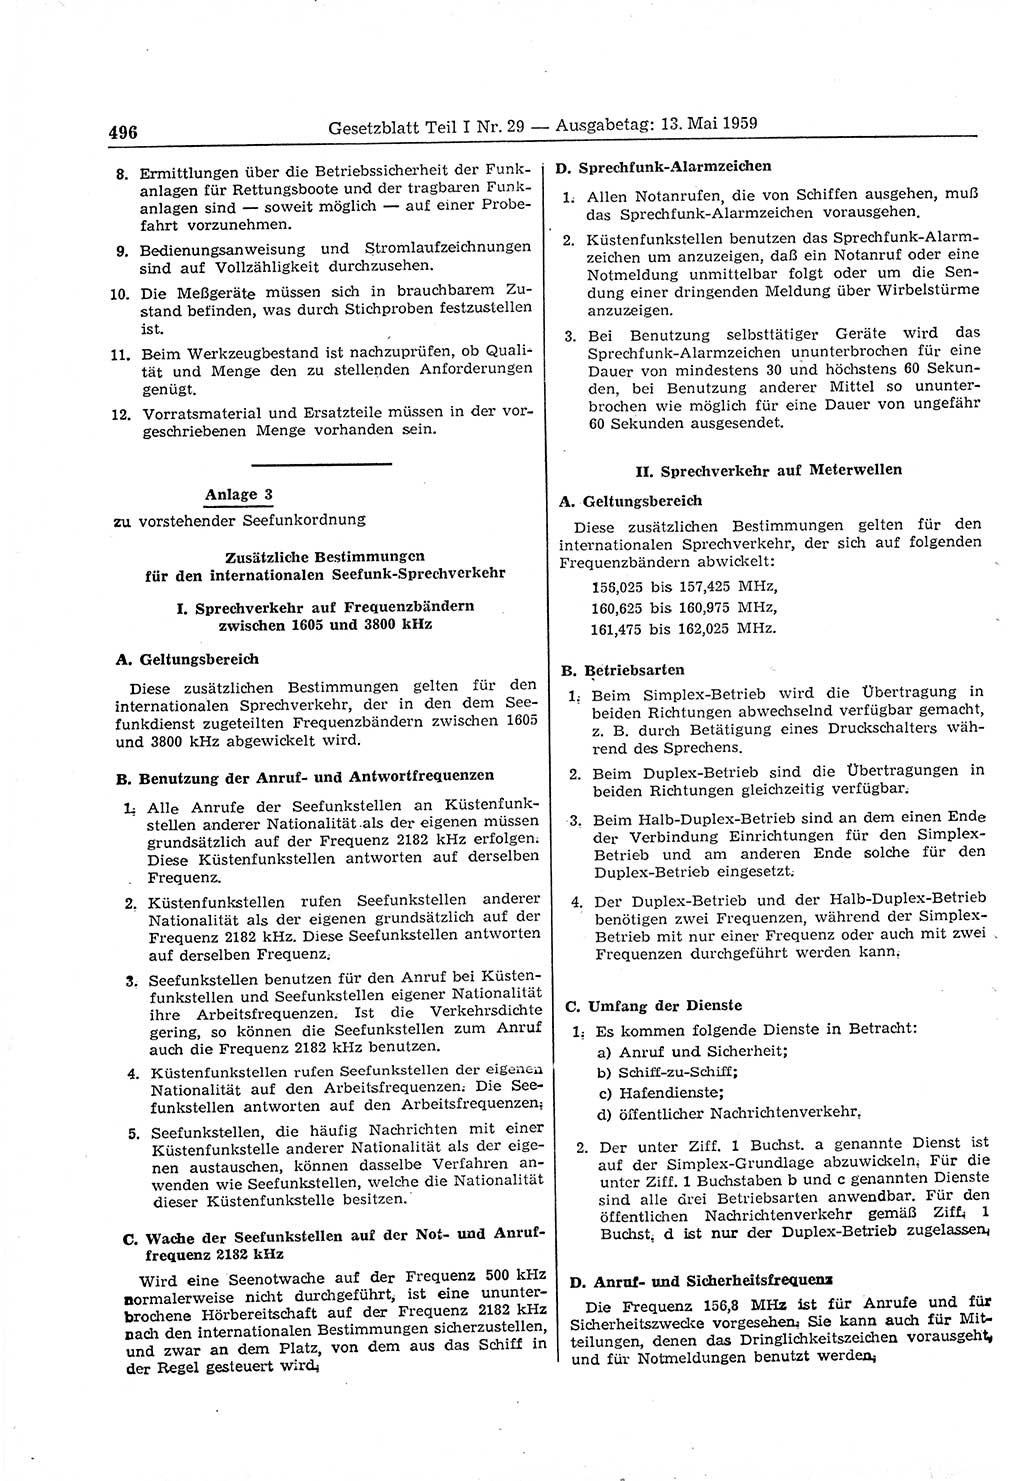 Gesetzblatt (GBl.) der Deutschen Demokratischen Republik (DDR) Teil Ⅰ 1959, Seite 496 (GBl. DDR Ⅰ 1959, S. 496)